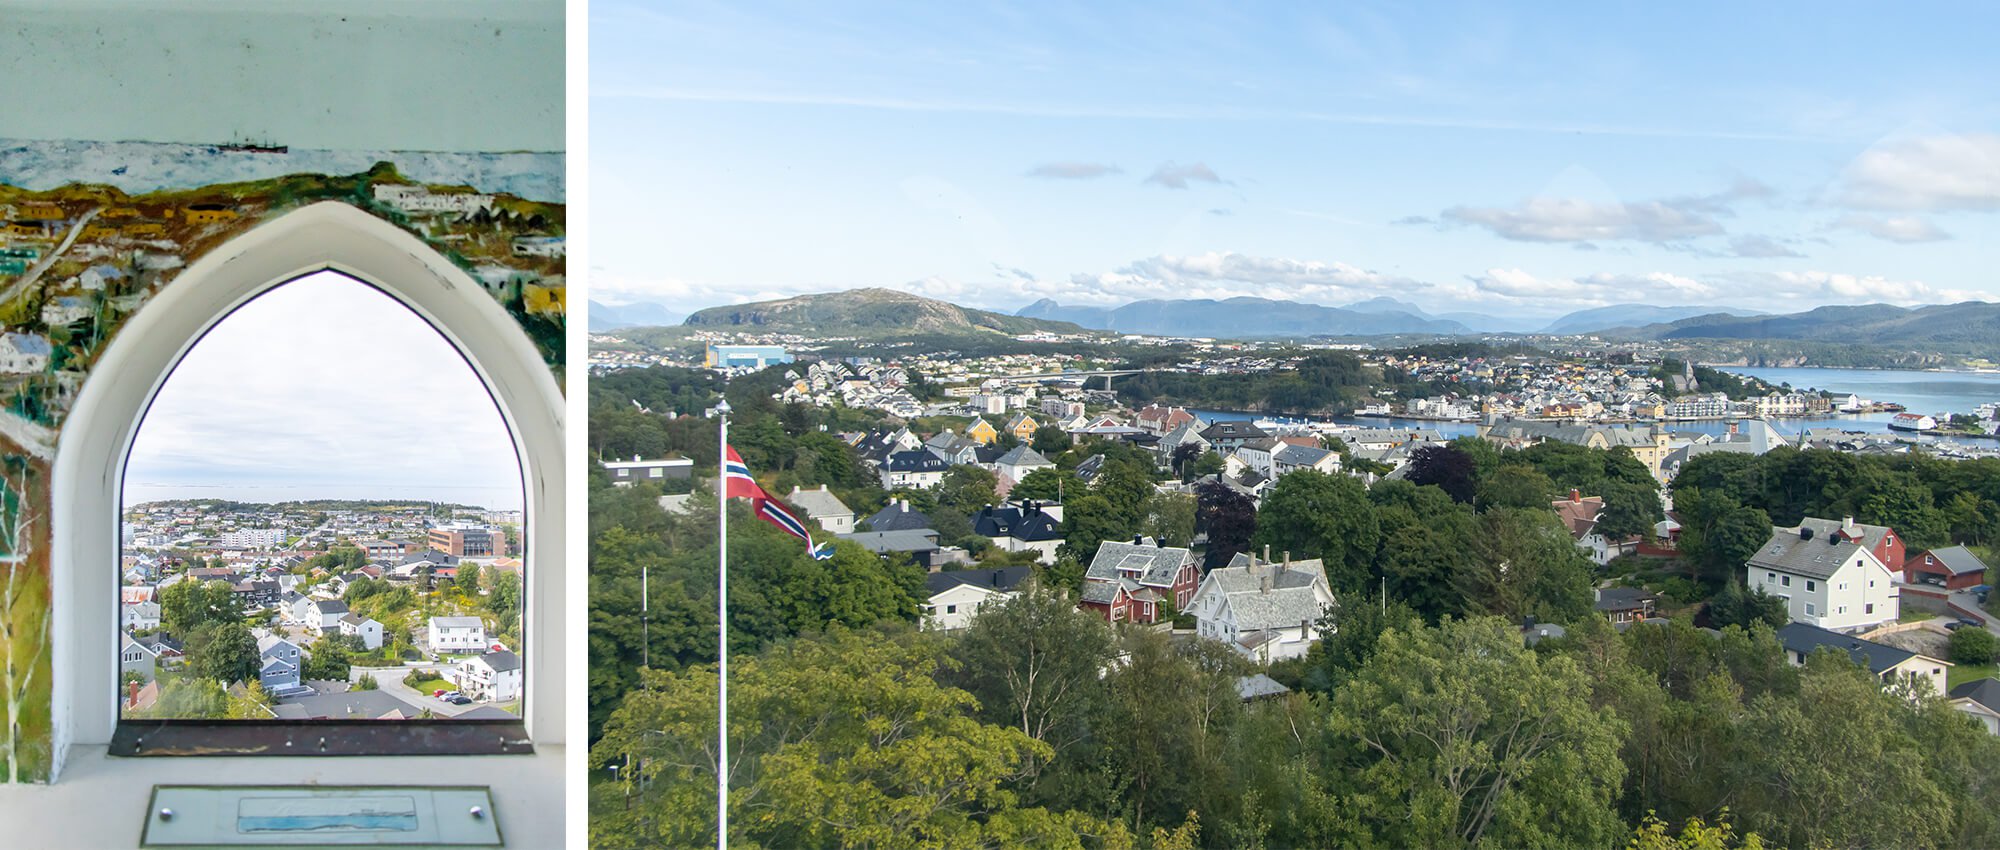 Workation in Norwegen, Kristiansund Stadt mit Blick auf die Stadt vom Aussichtsturm aus